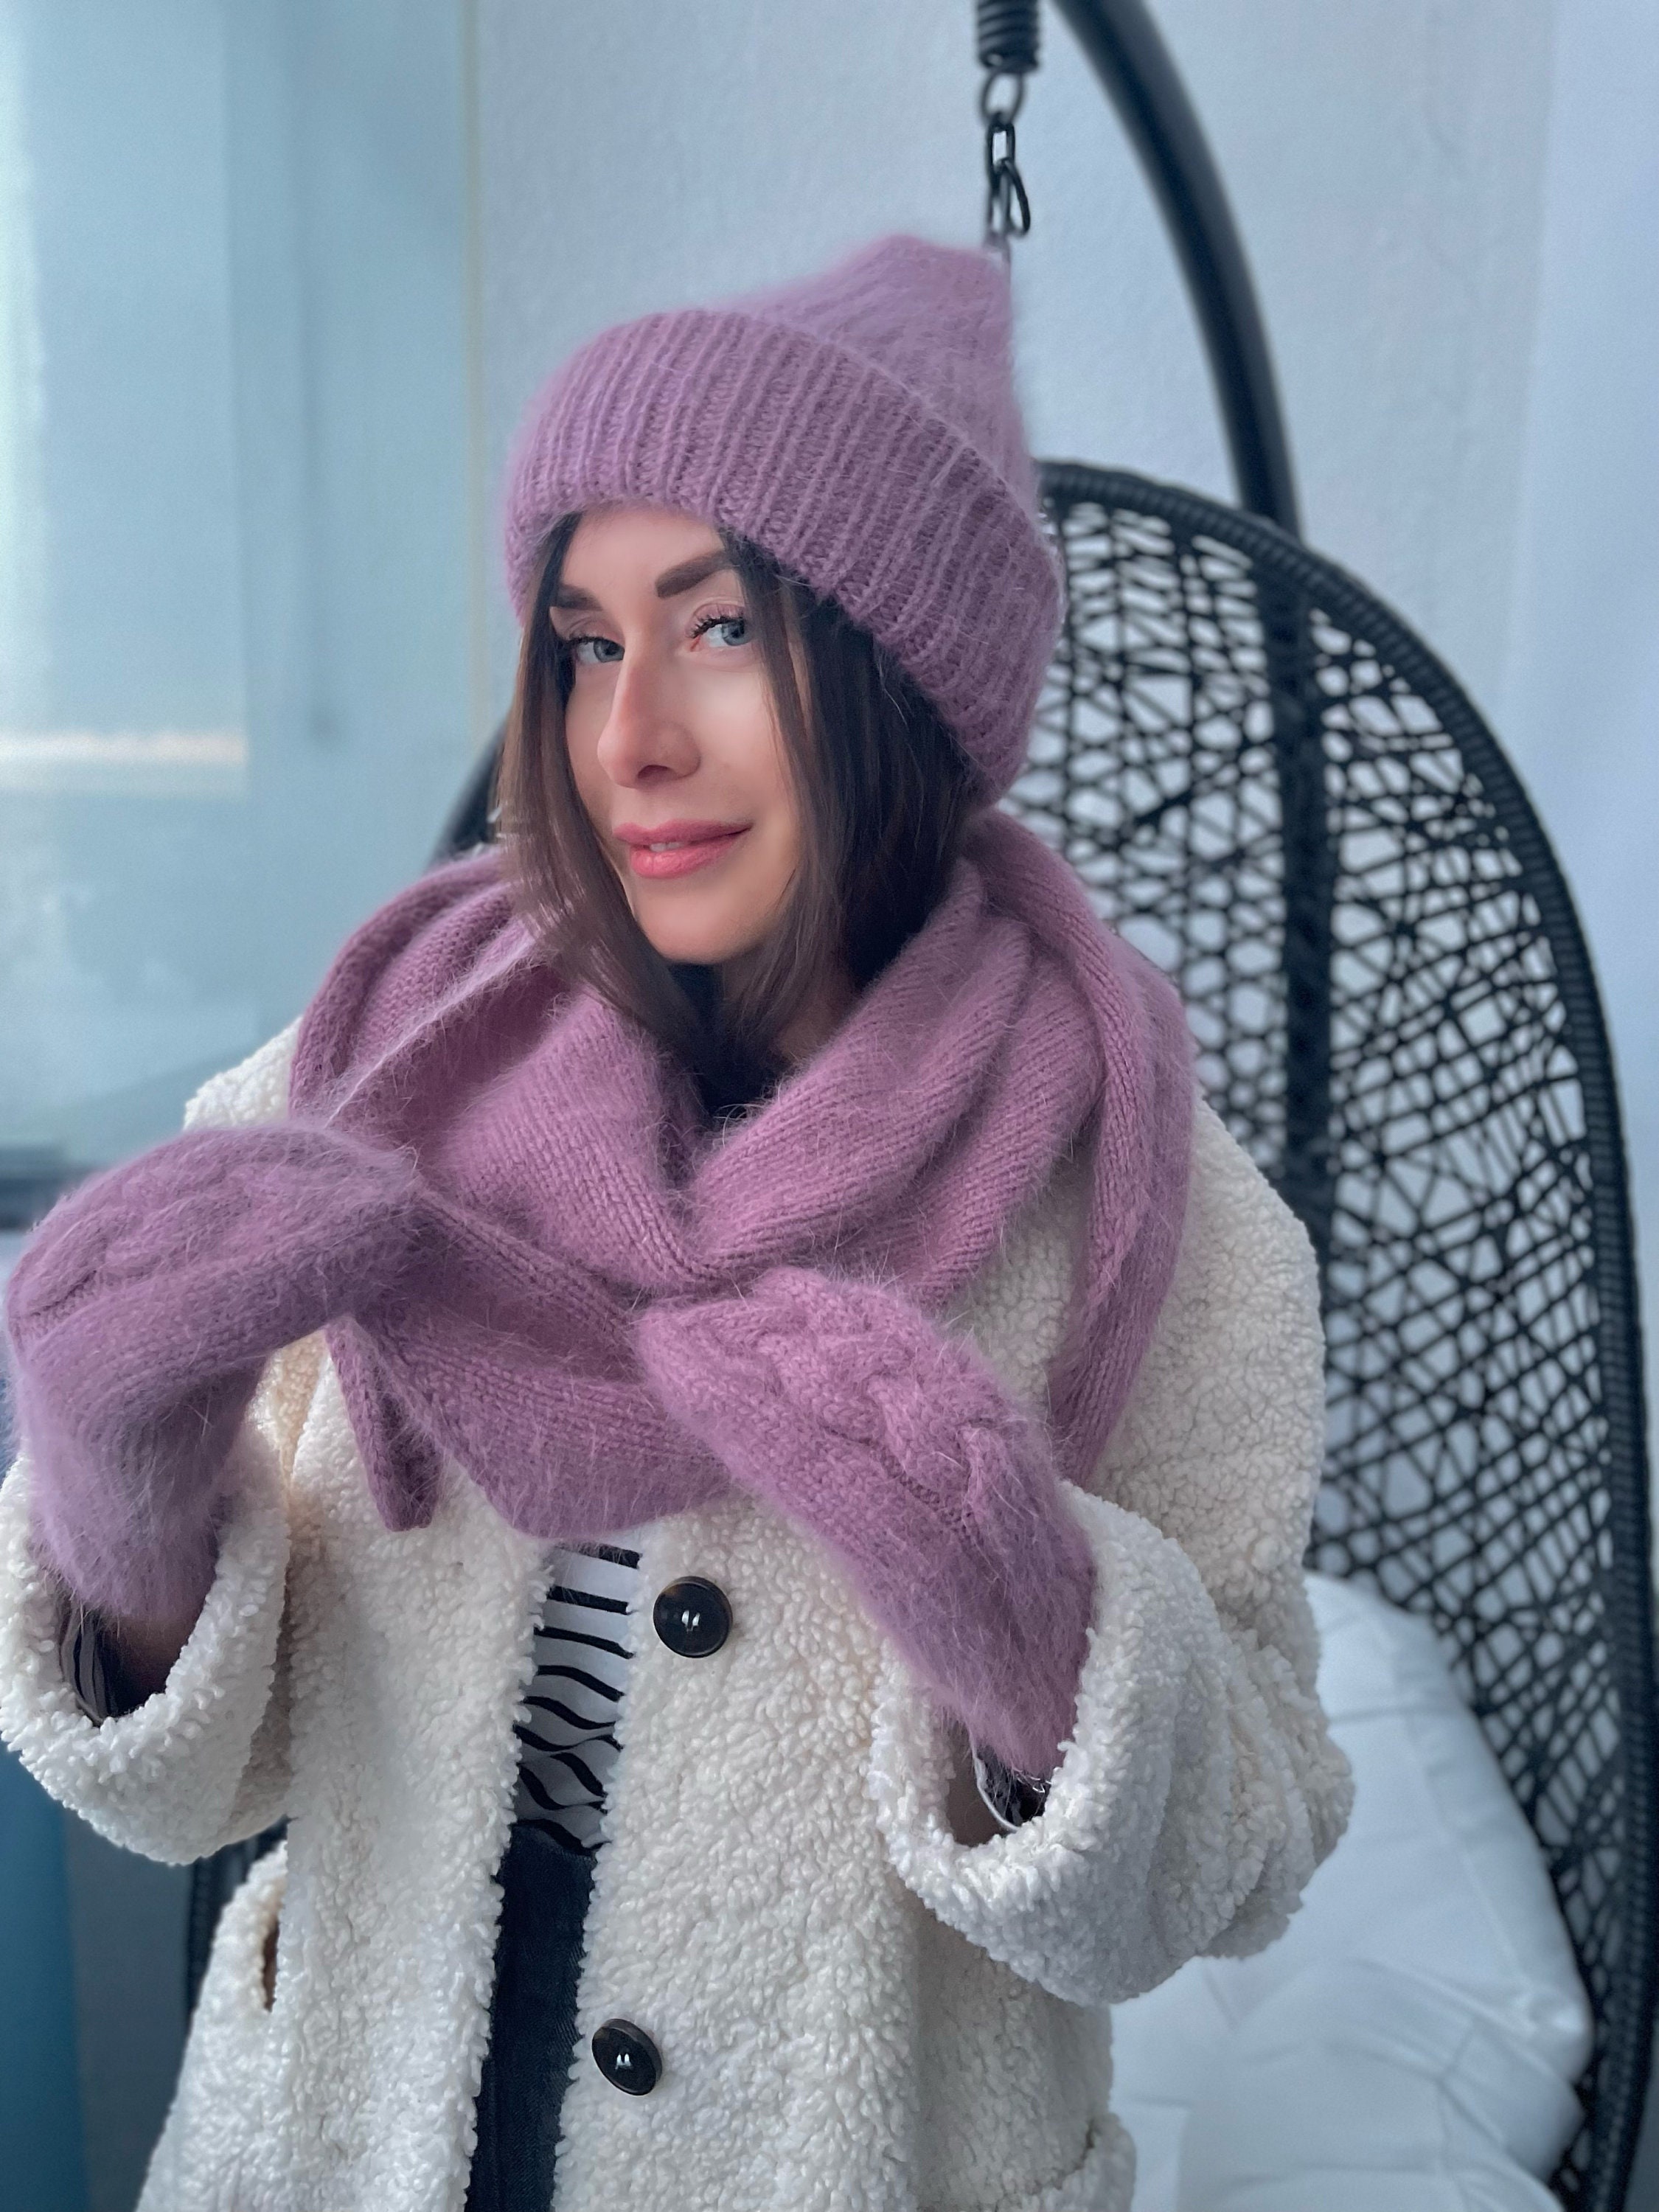 Woolen Yarn Long Scarf Hat Gloves Very Warm 3 in 1 Set-Wear Warm Combination Set-Winter Warm Wear Accessories 